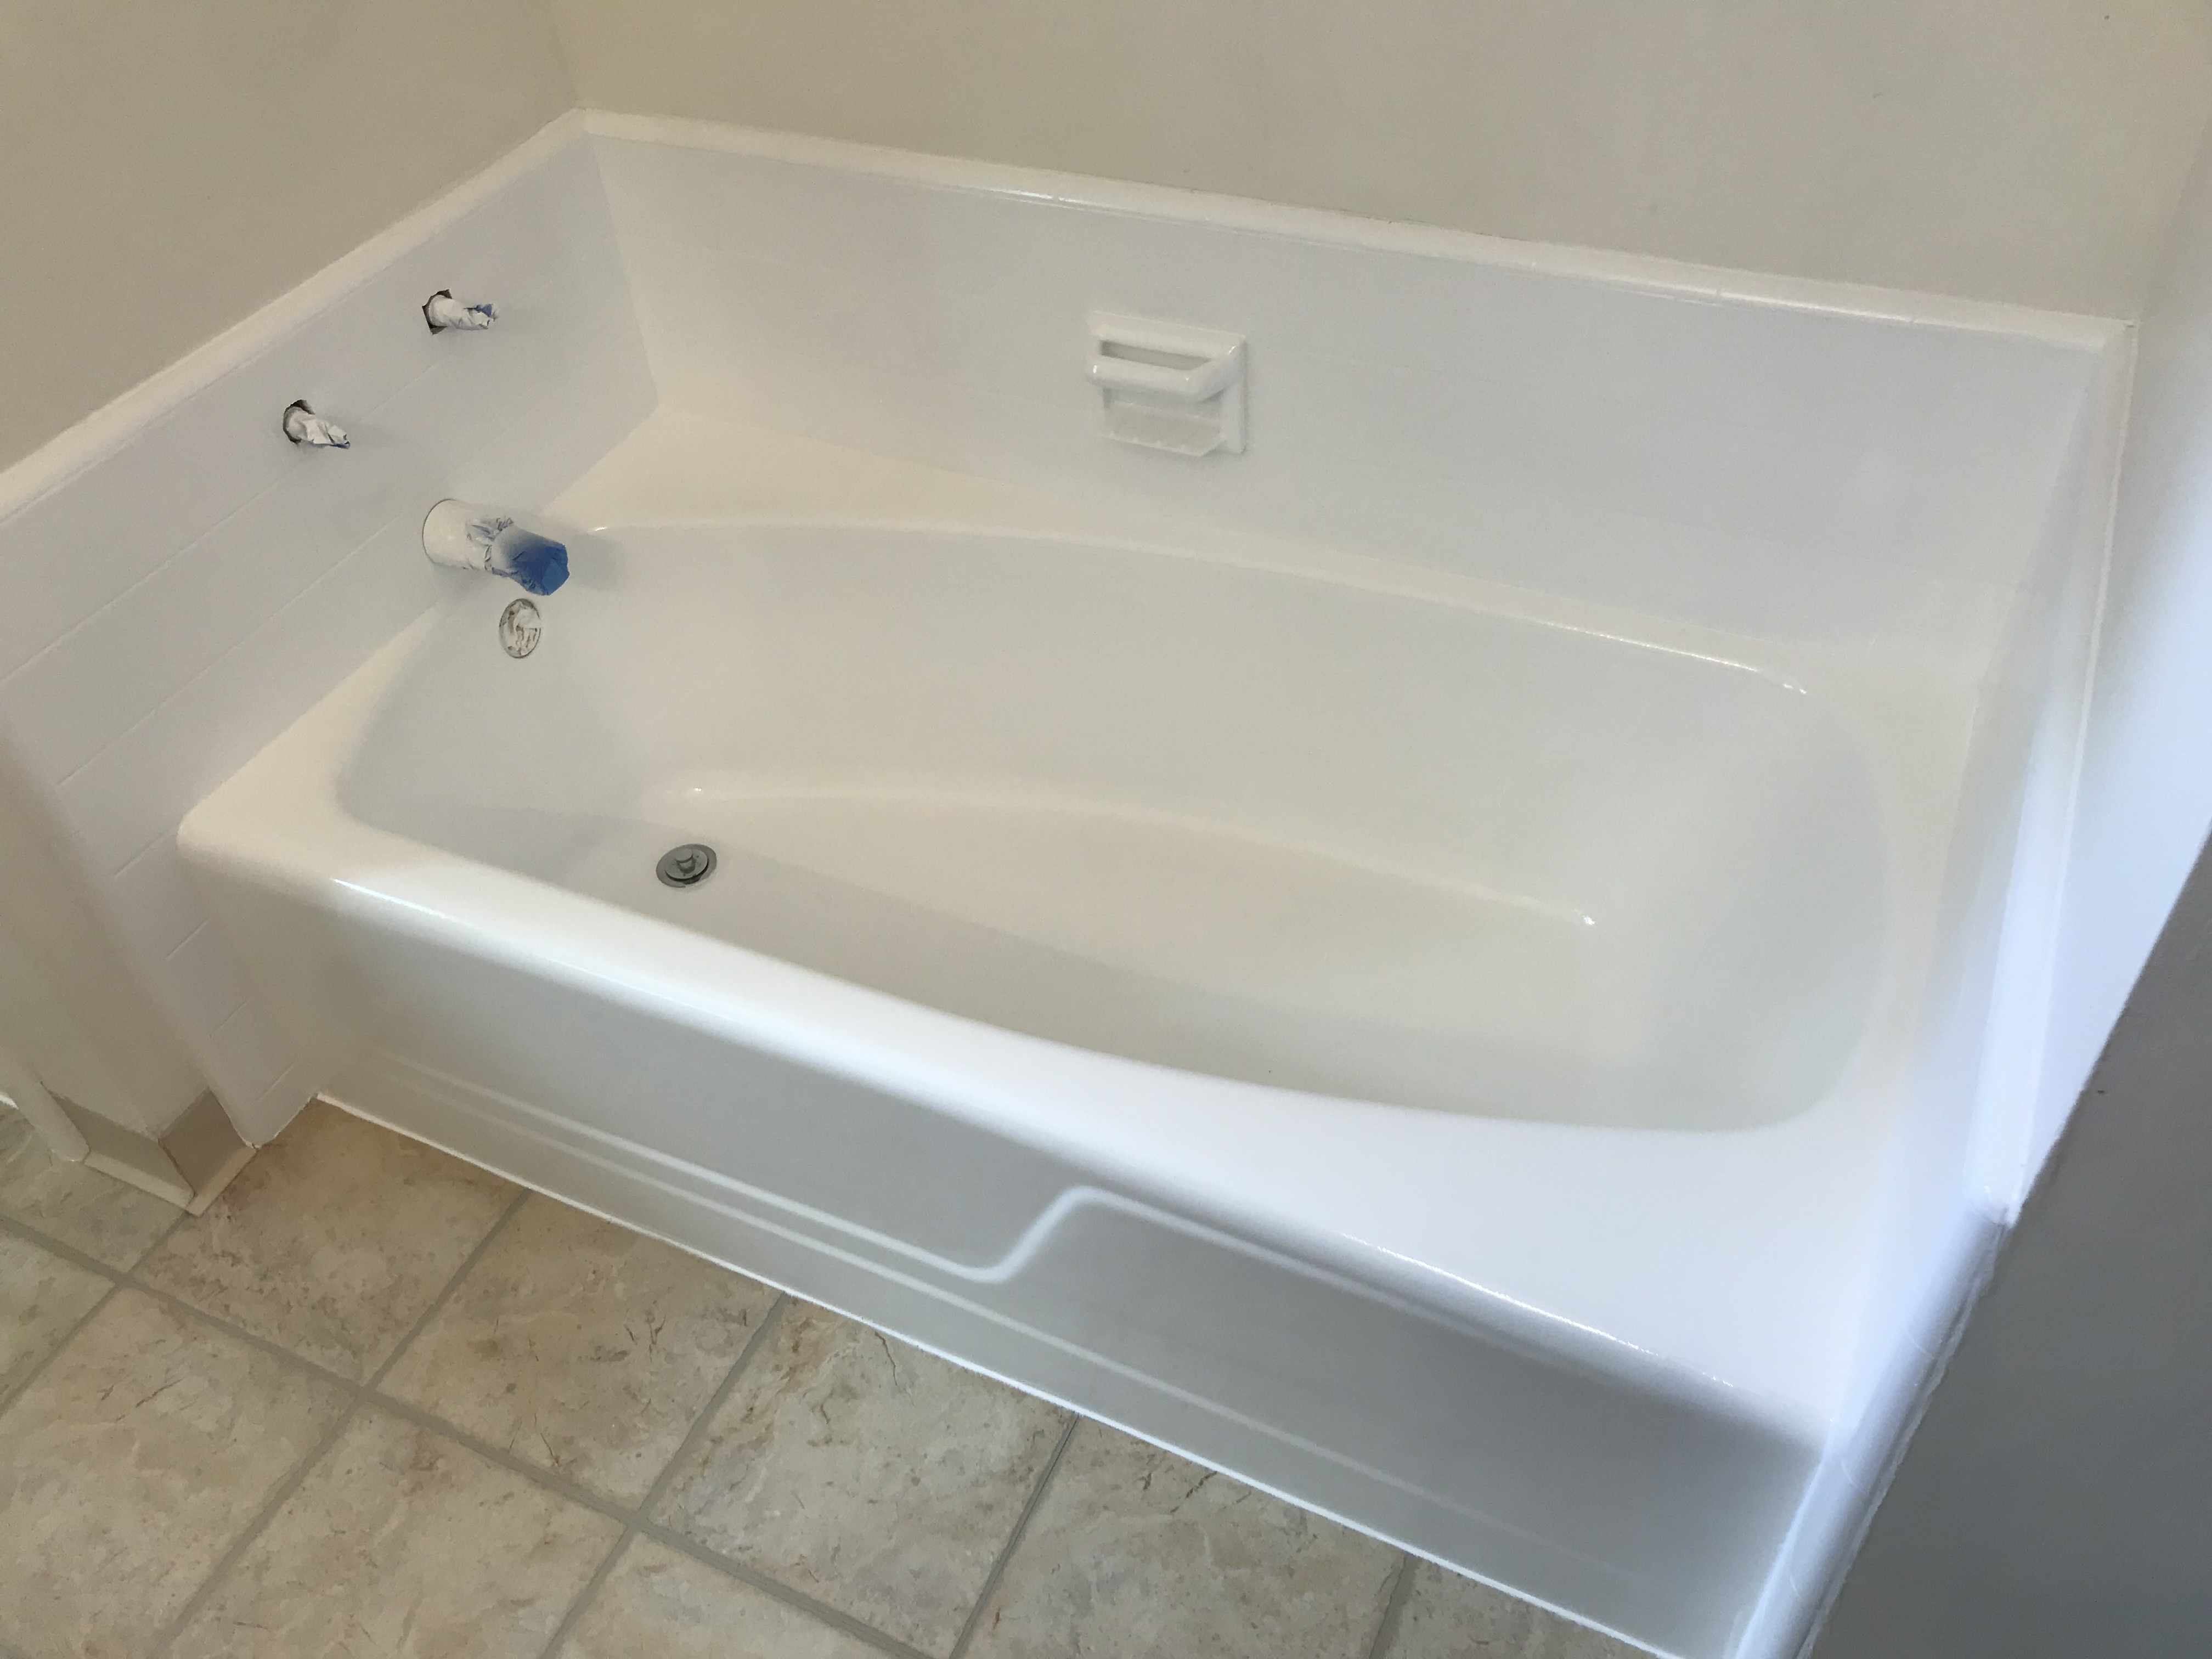 Bathtub refinishing and tile resurfacing after - NuFinishPro